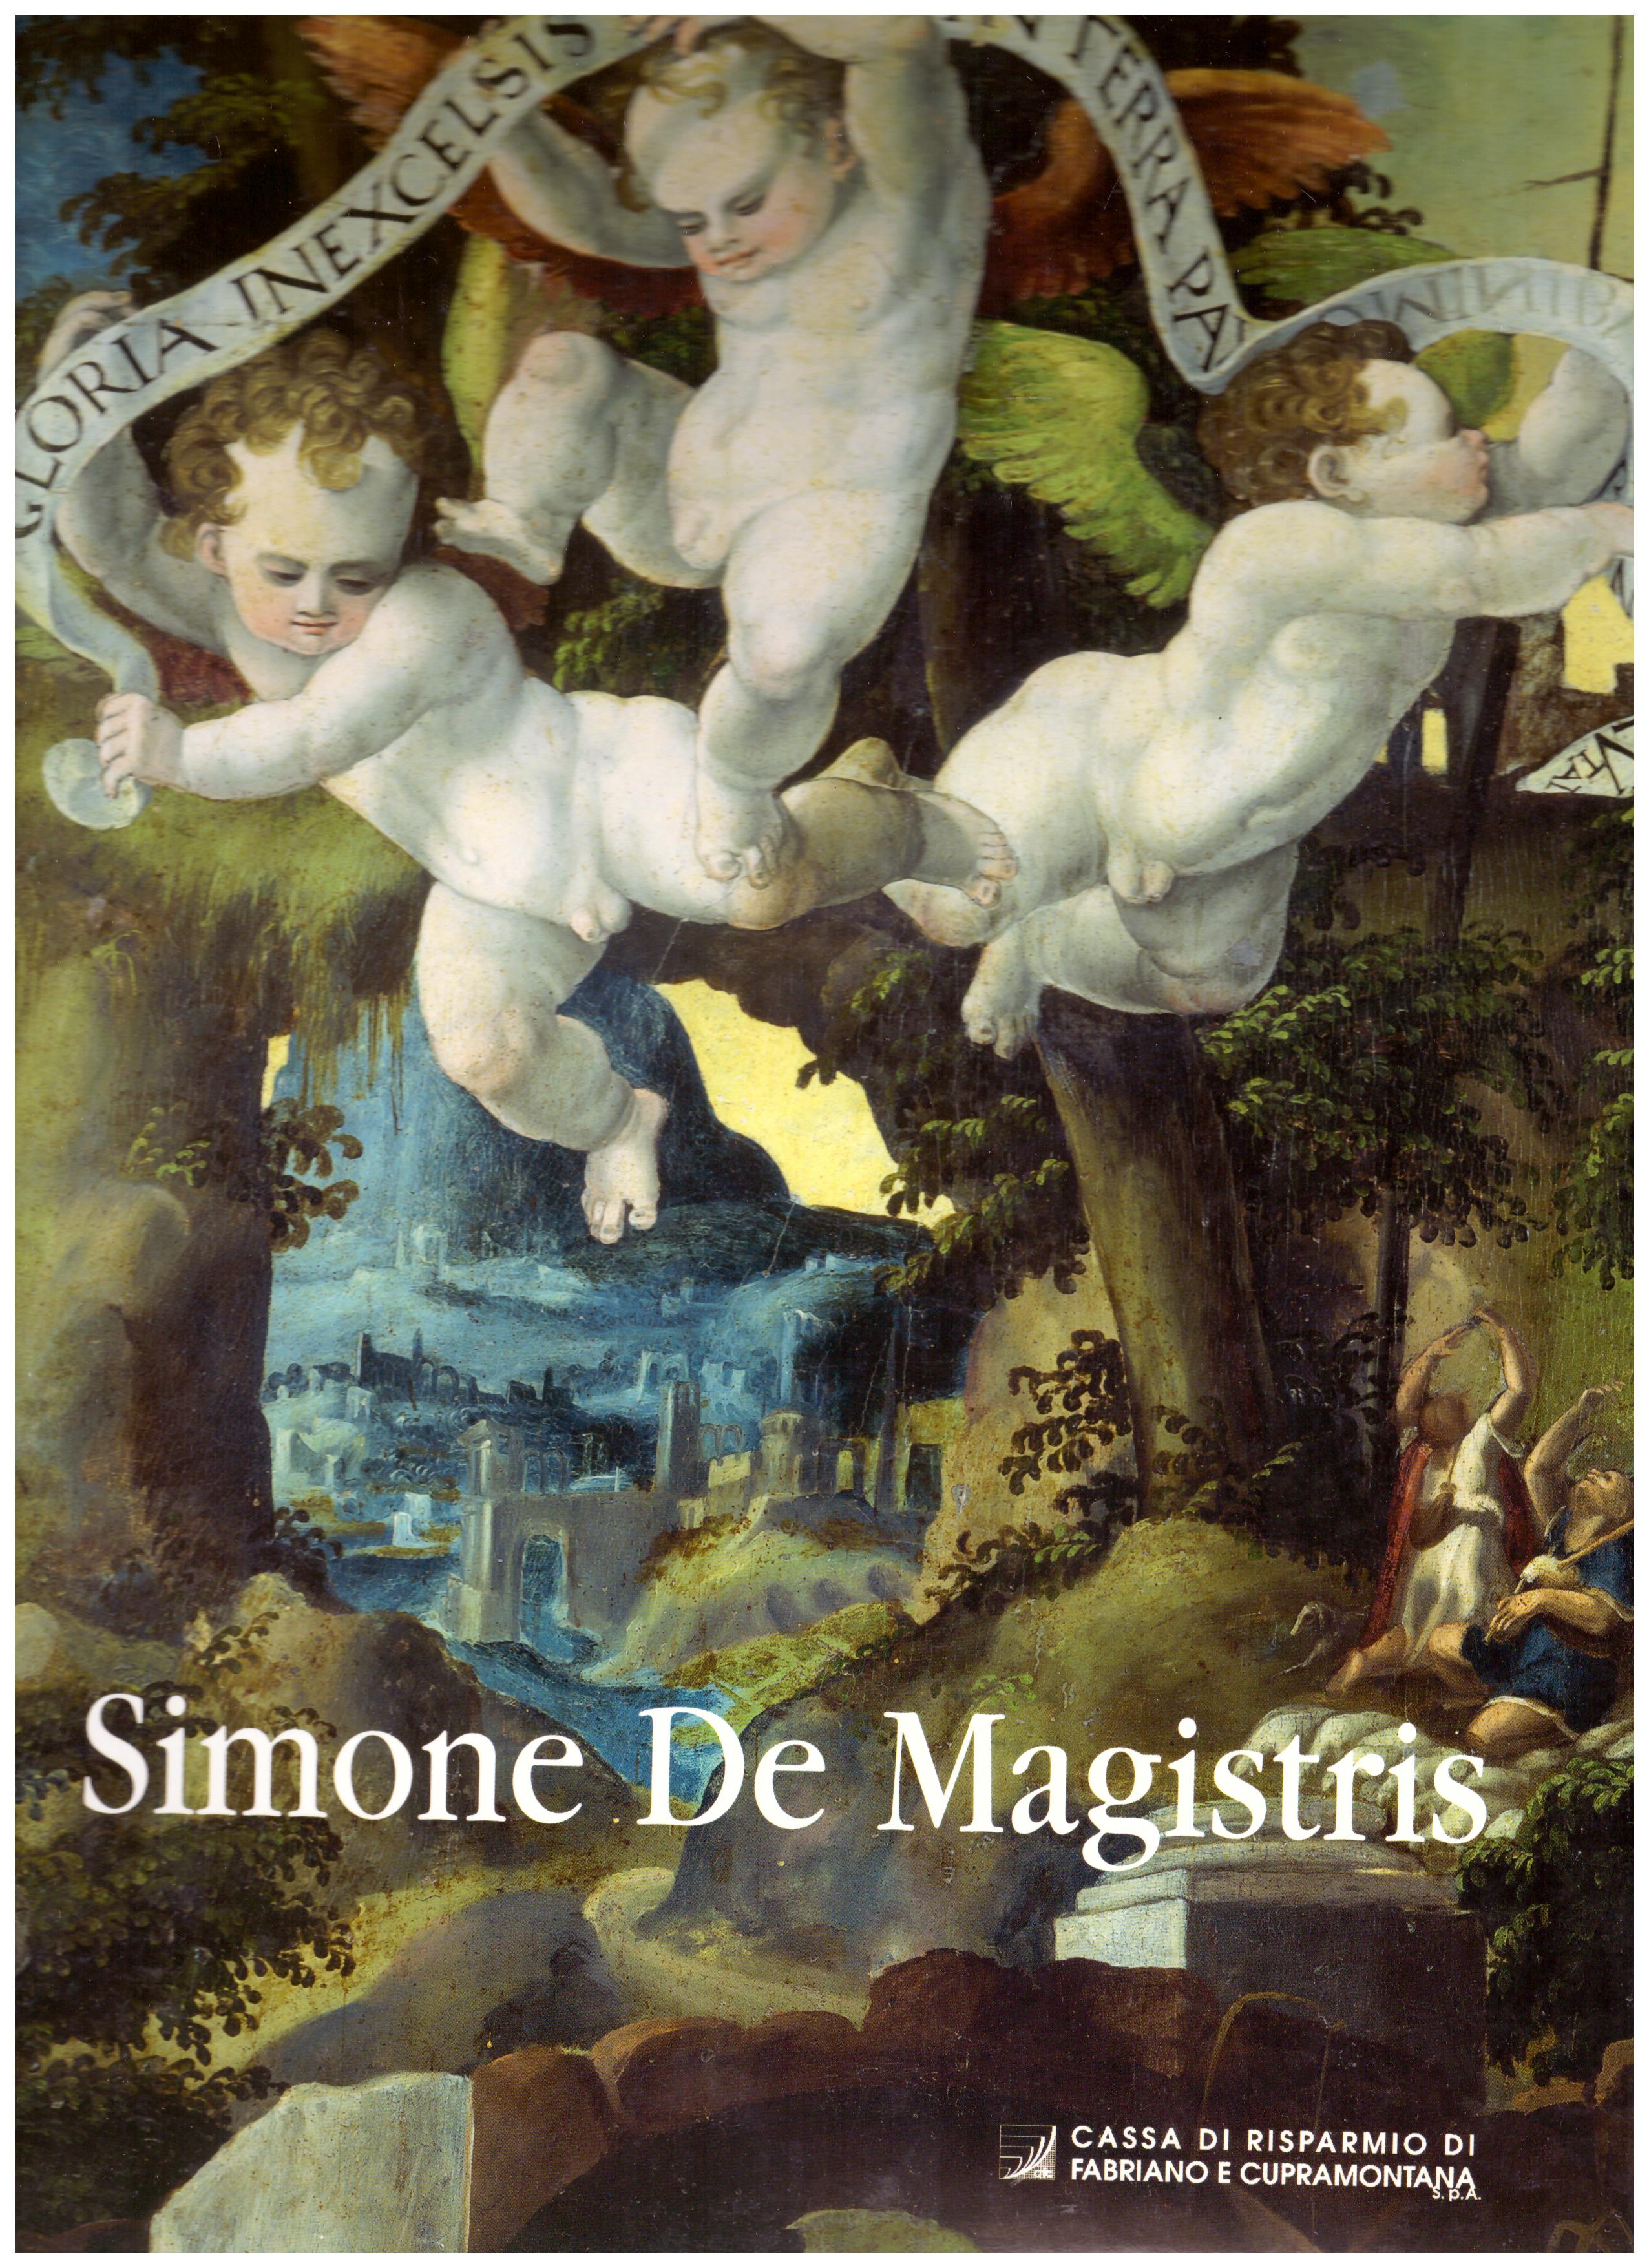 Titolo: Simone De Magistris     Autore: AA.VV.     Editore: Cassa di risparmio di Fabriano e Cupramontana, 2001